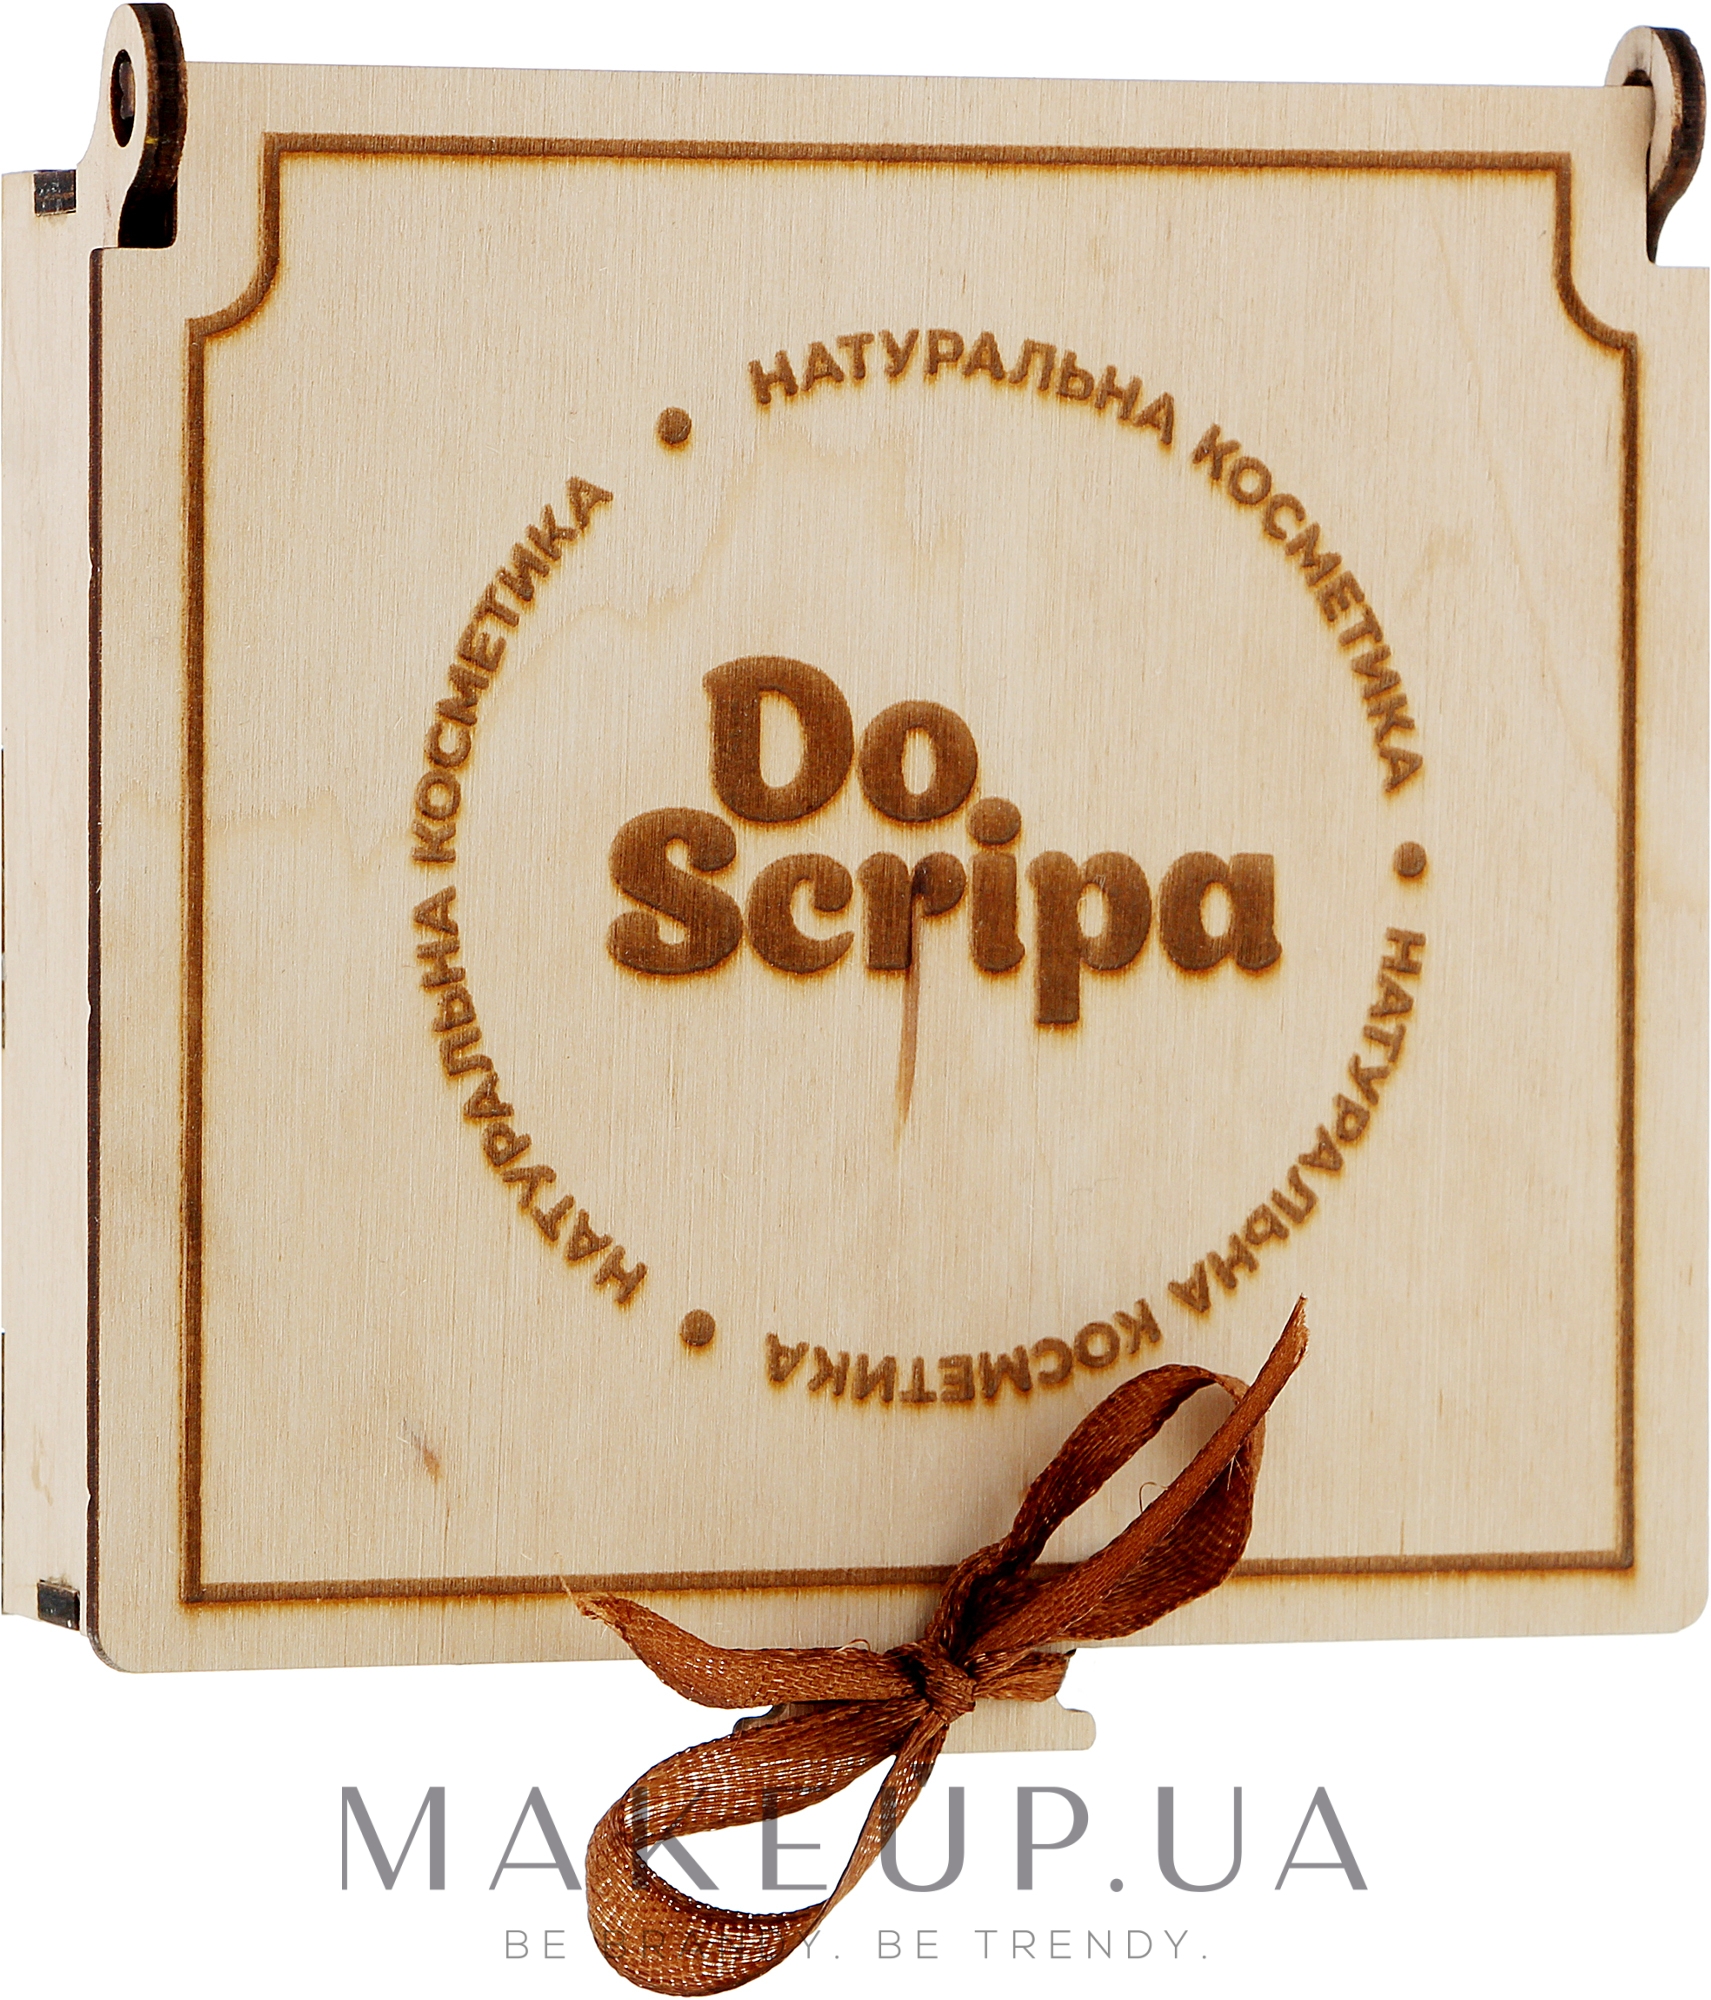 Мило "Букет ромашок" у подарунковій упаковці з дерева - Do Scripa — фото 100g